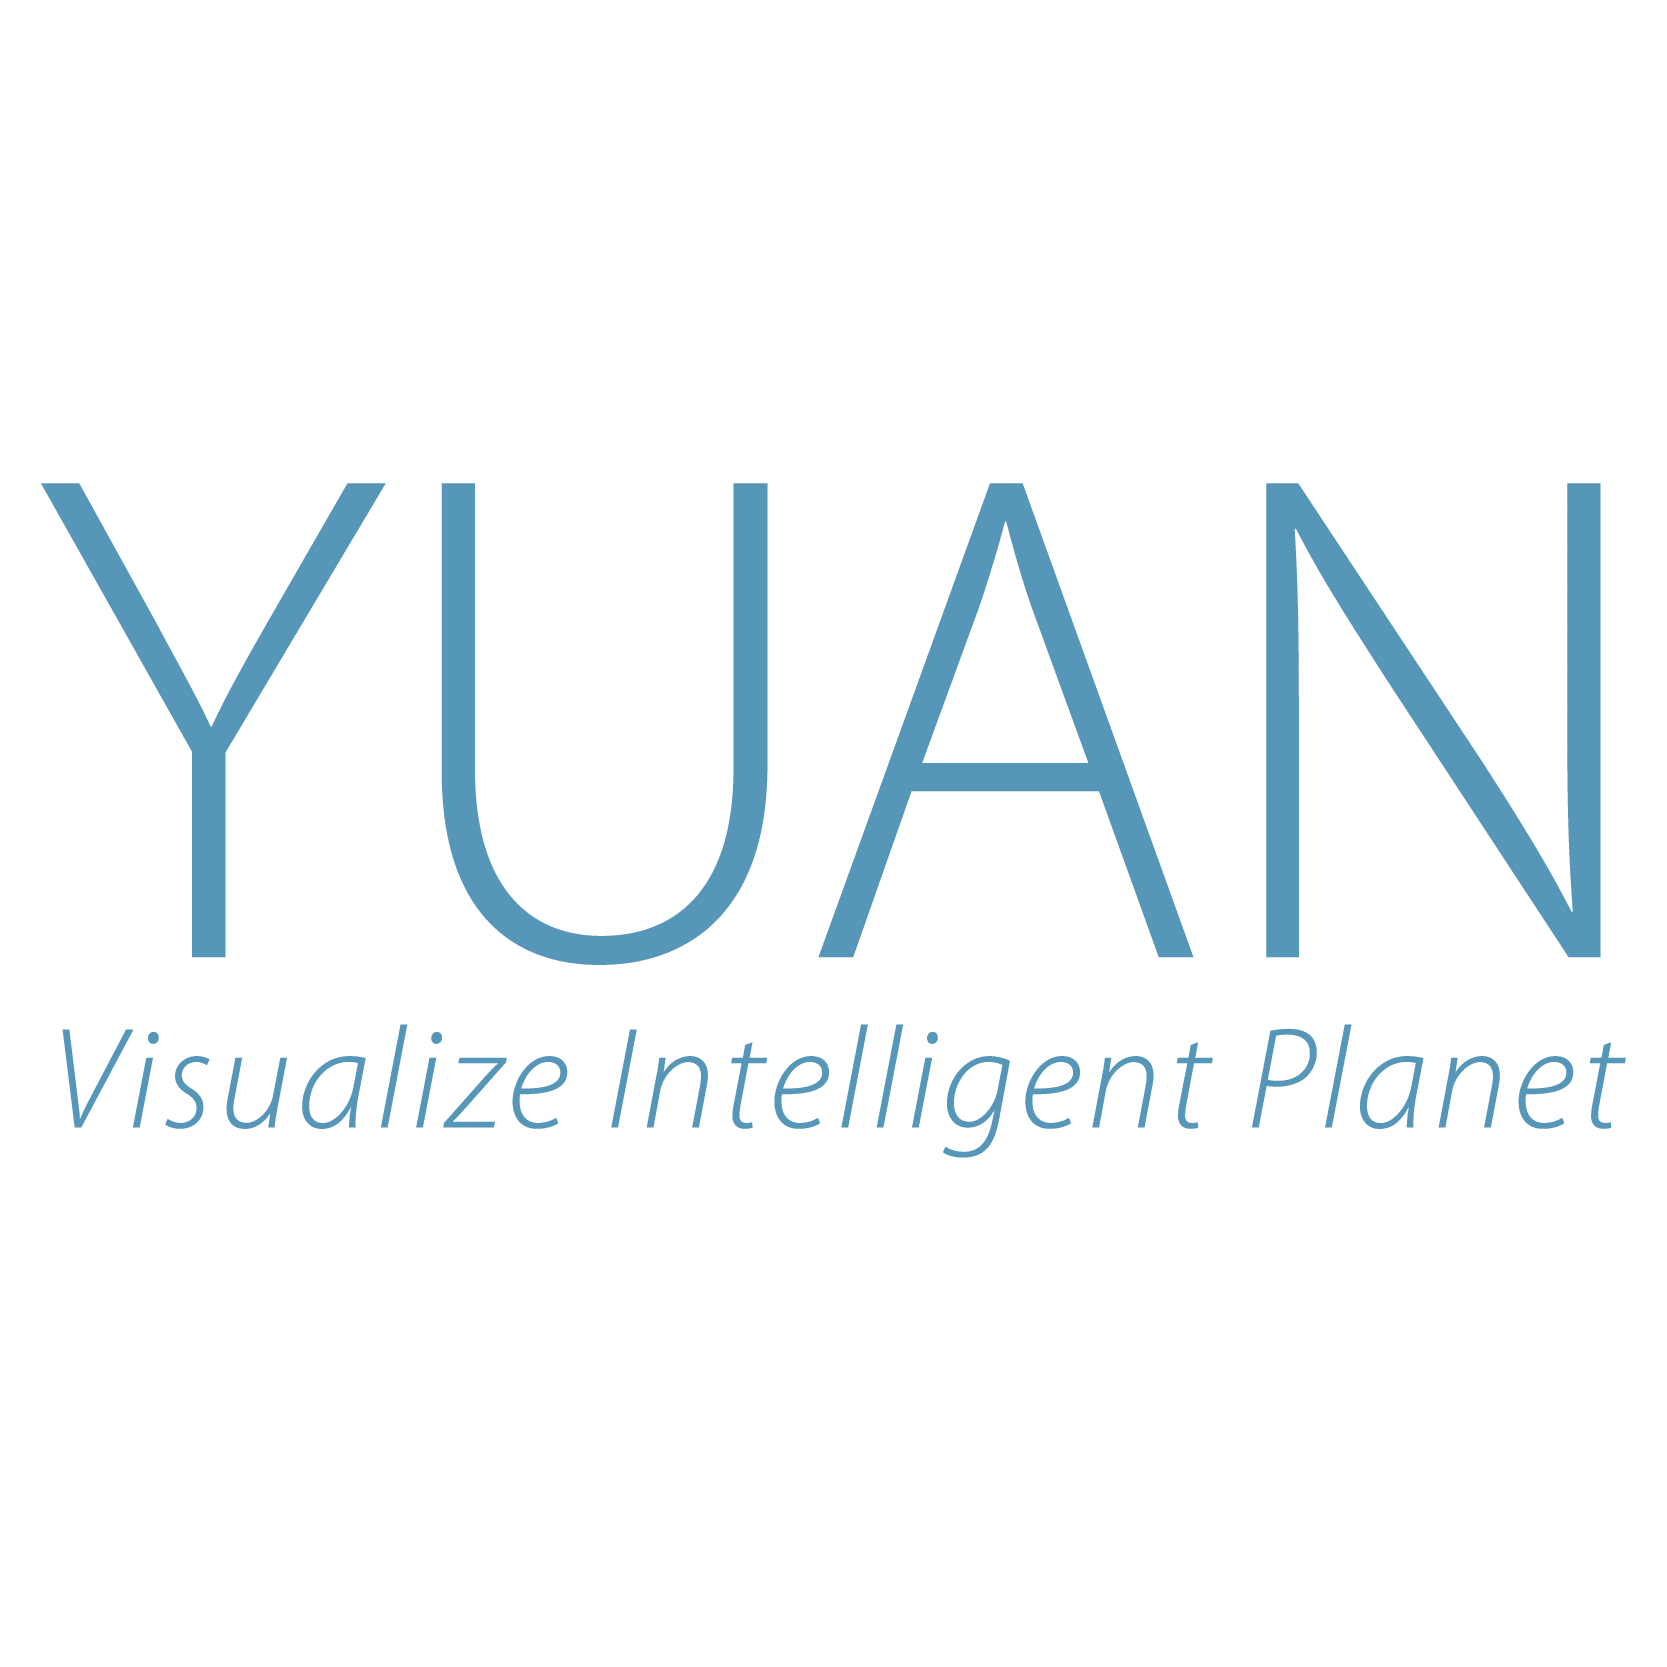 YUAN High-Tech